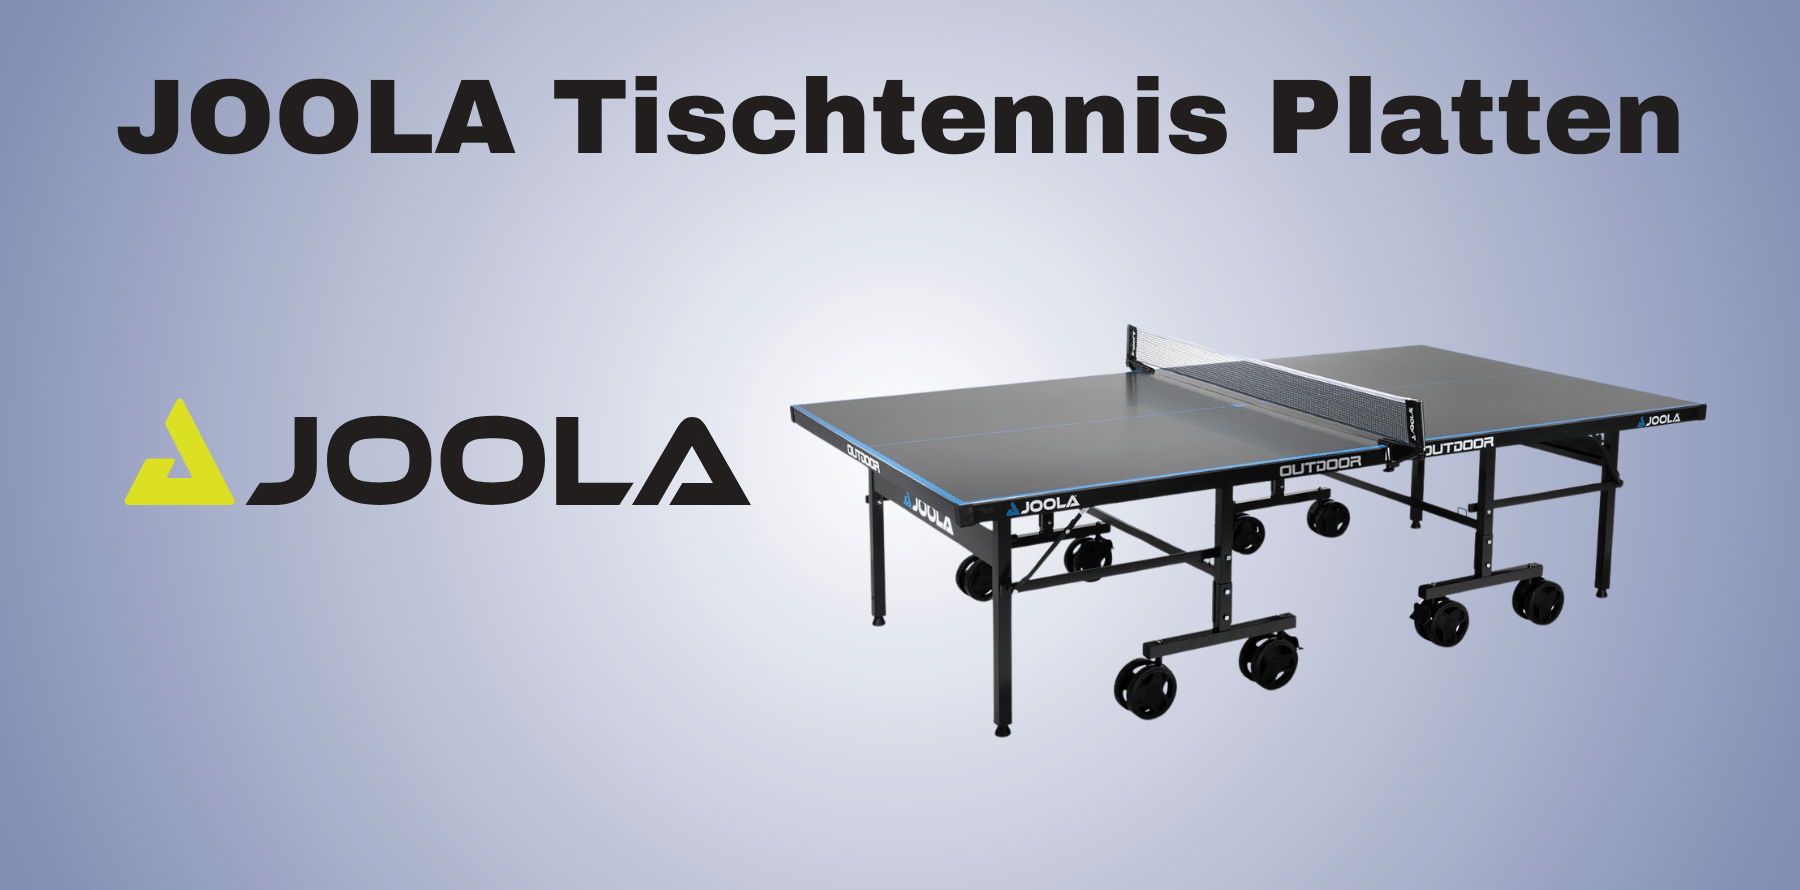 Joola Tischtennisplatten